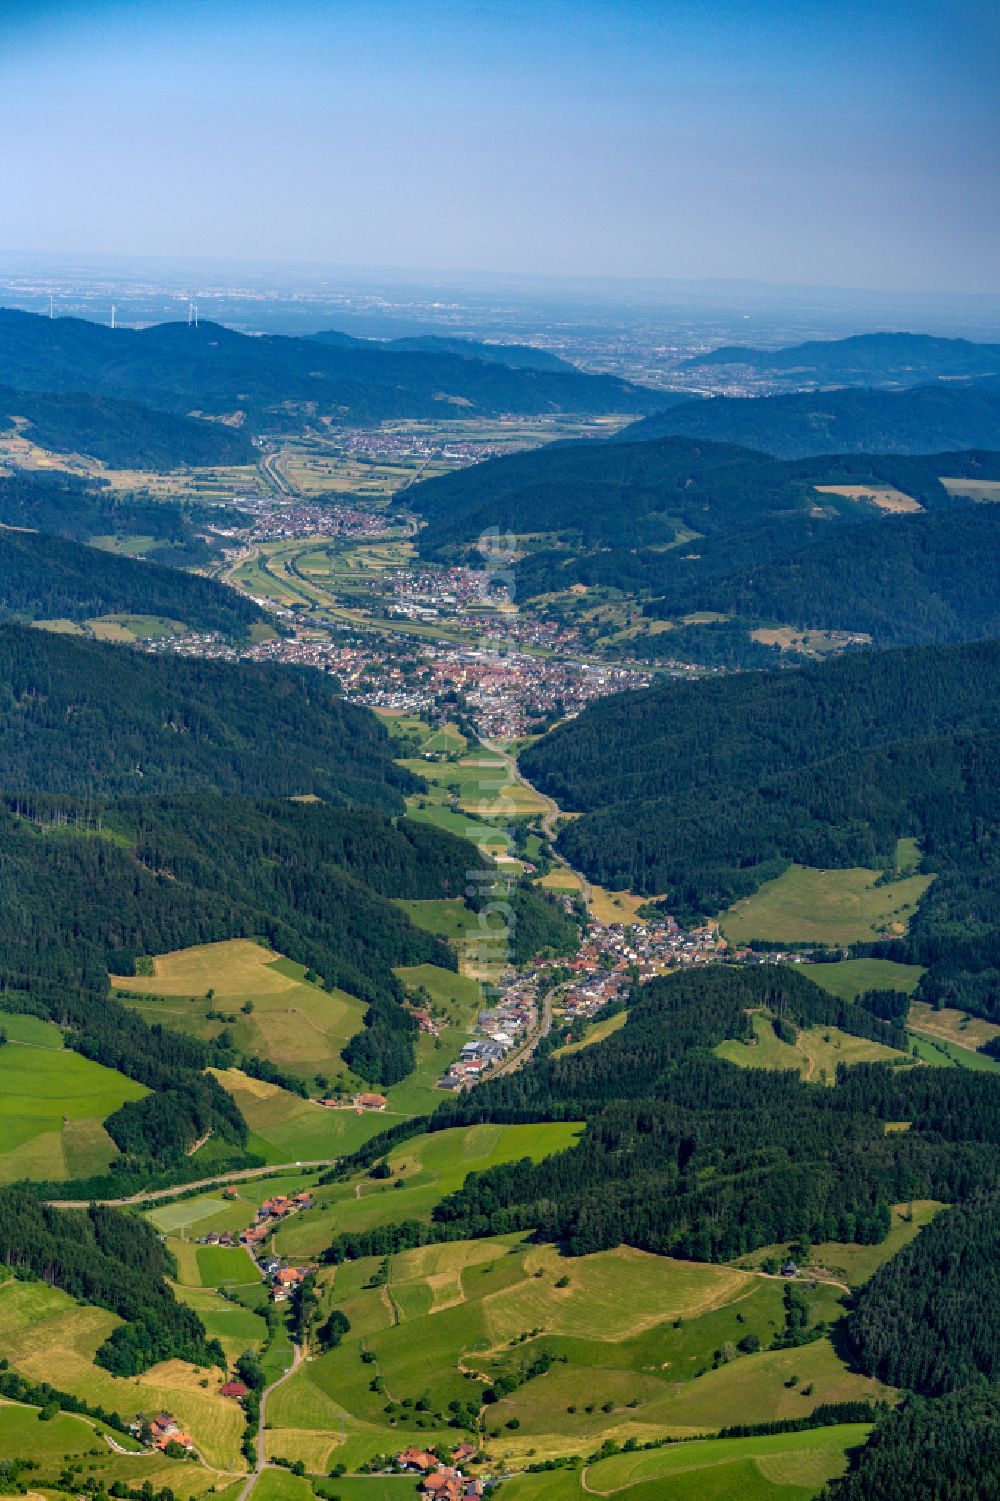 Luftbild Elzach - Berg- und Tal Landschaft in Elzach im Bundesland Baden-Württemberg, Deutschland